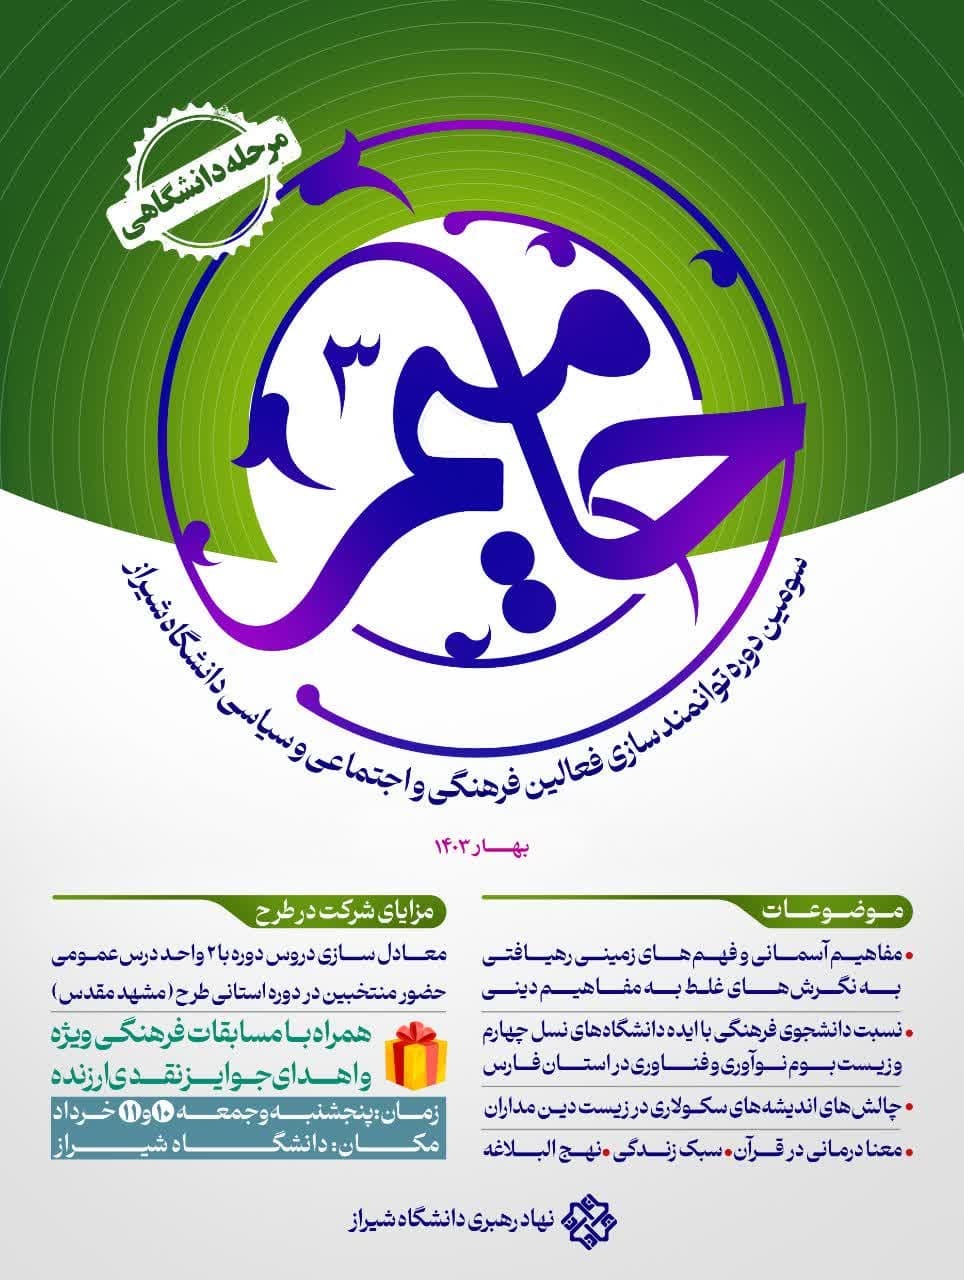 سومین طرح حامیم در دانشگاه شیراز برگزار می شود